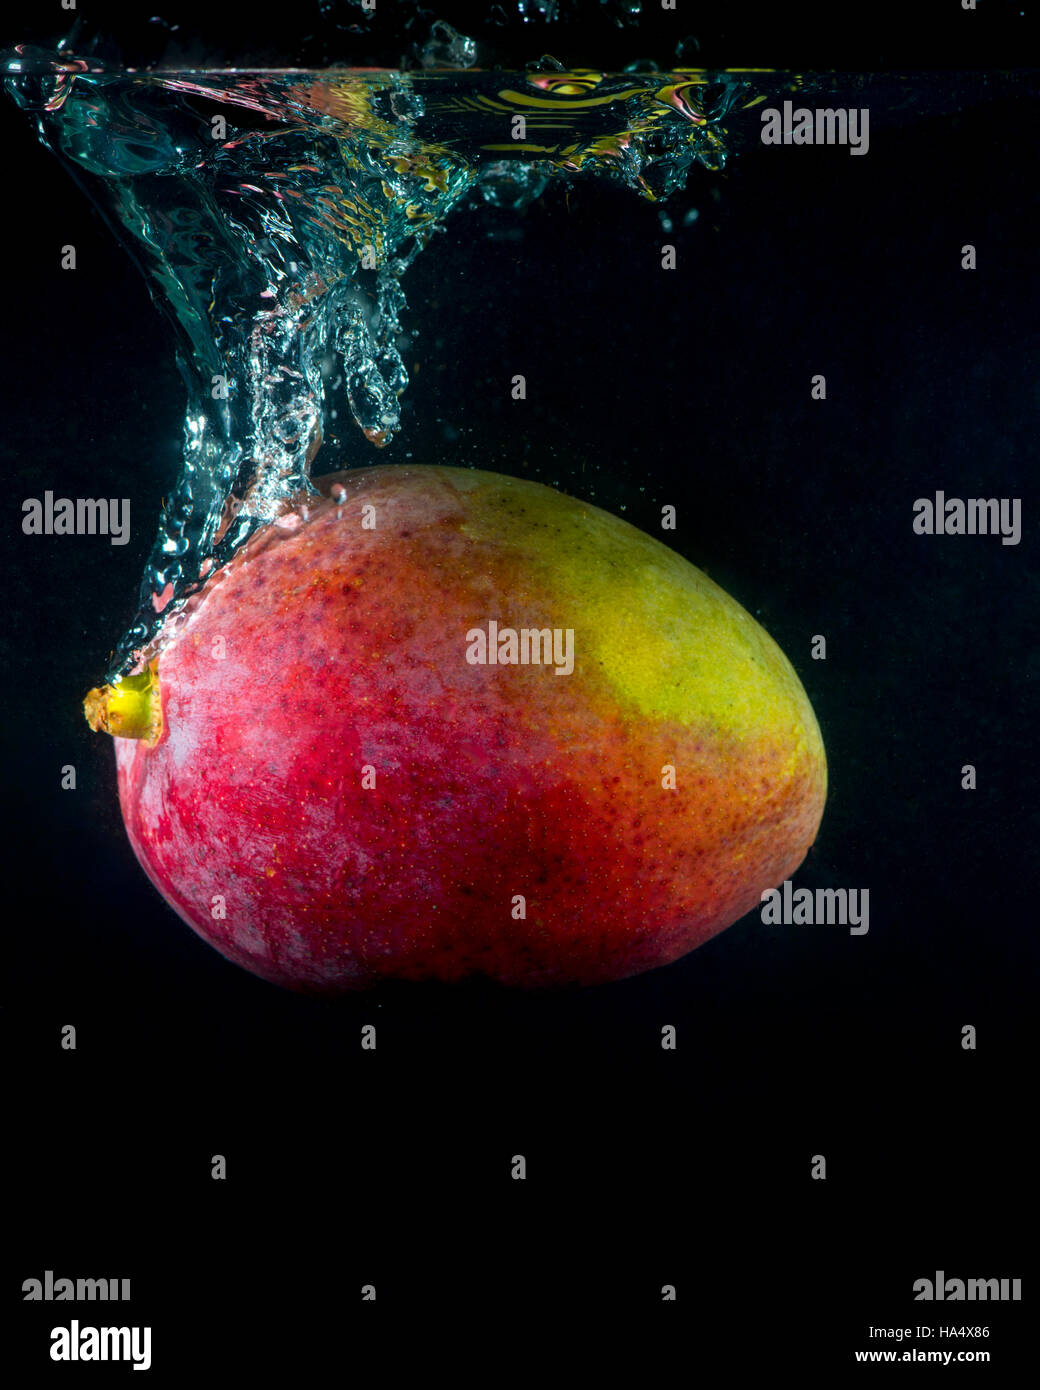 Mango, planschen im Wasser auf schwarzem Hintergrund Stockfoto